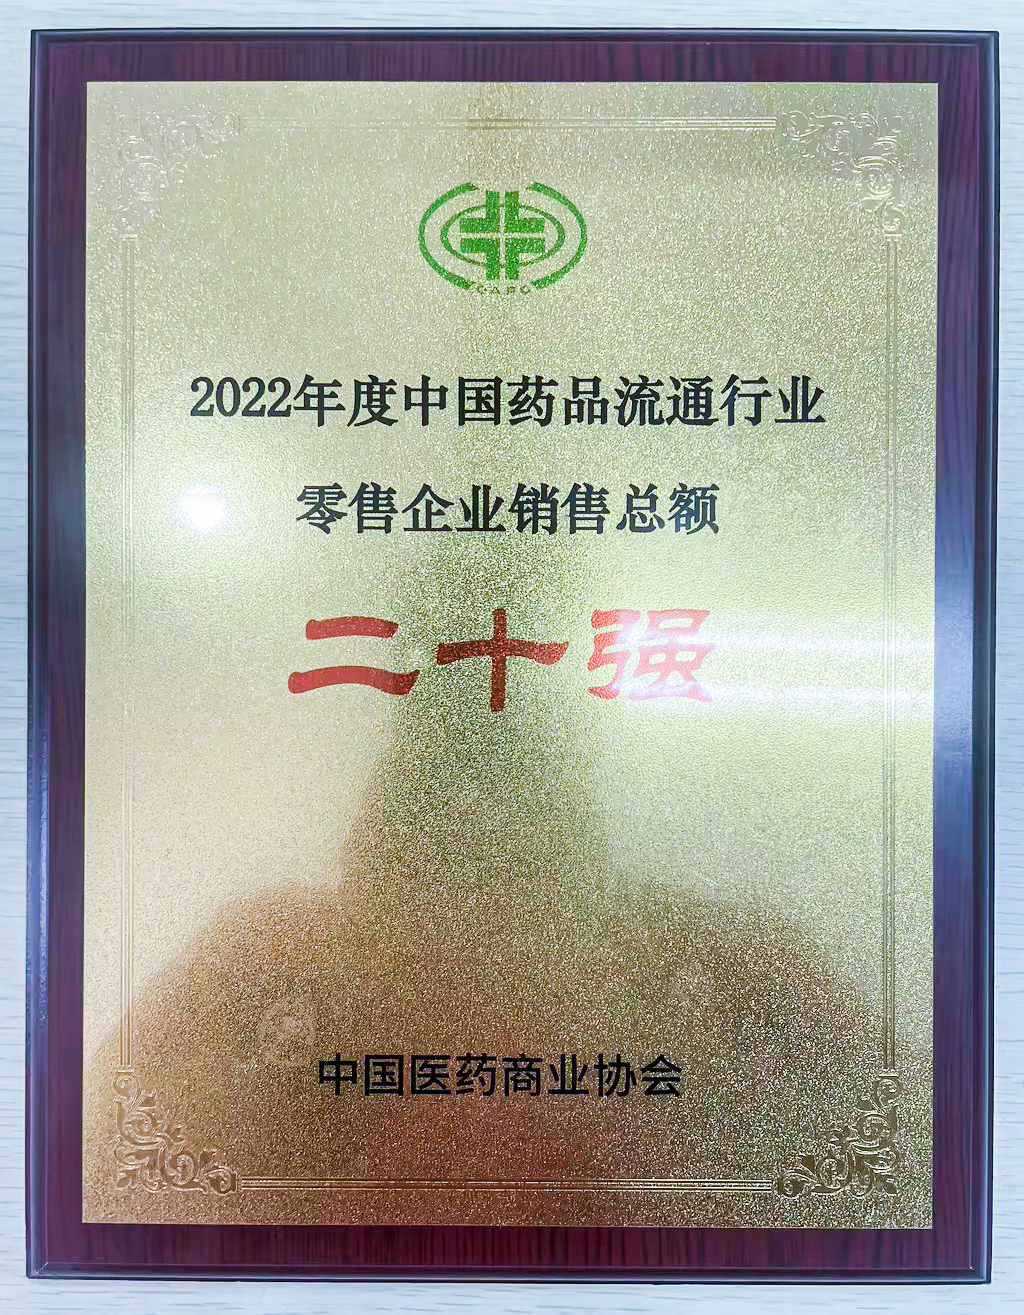 “2022年度中國藥品流通行業零售企業銷售總額榜”第十位